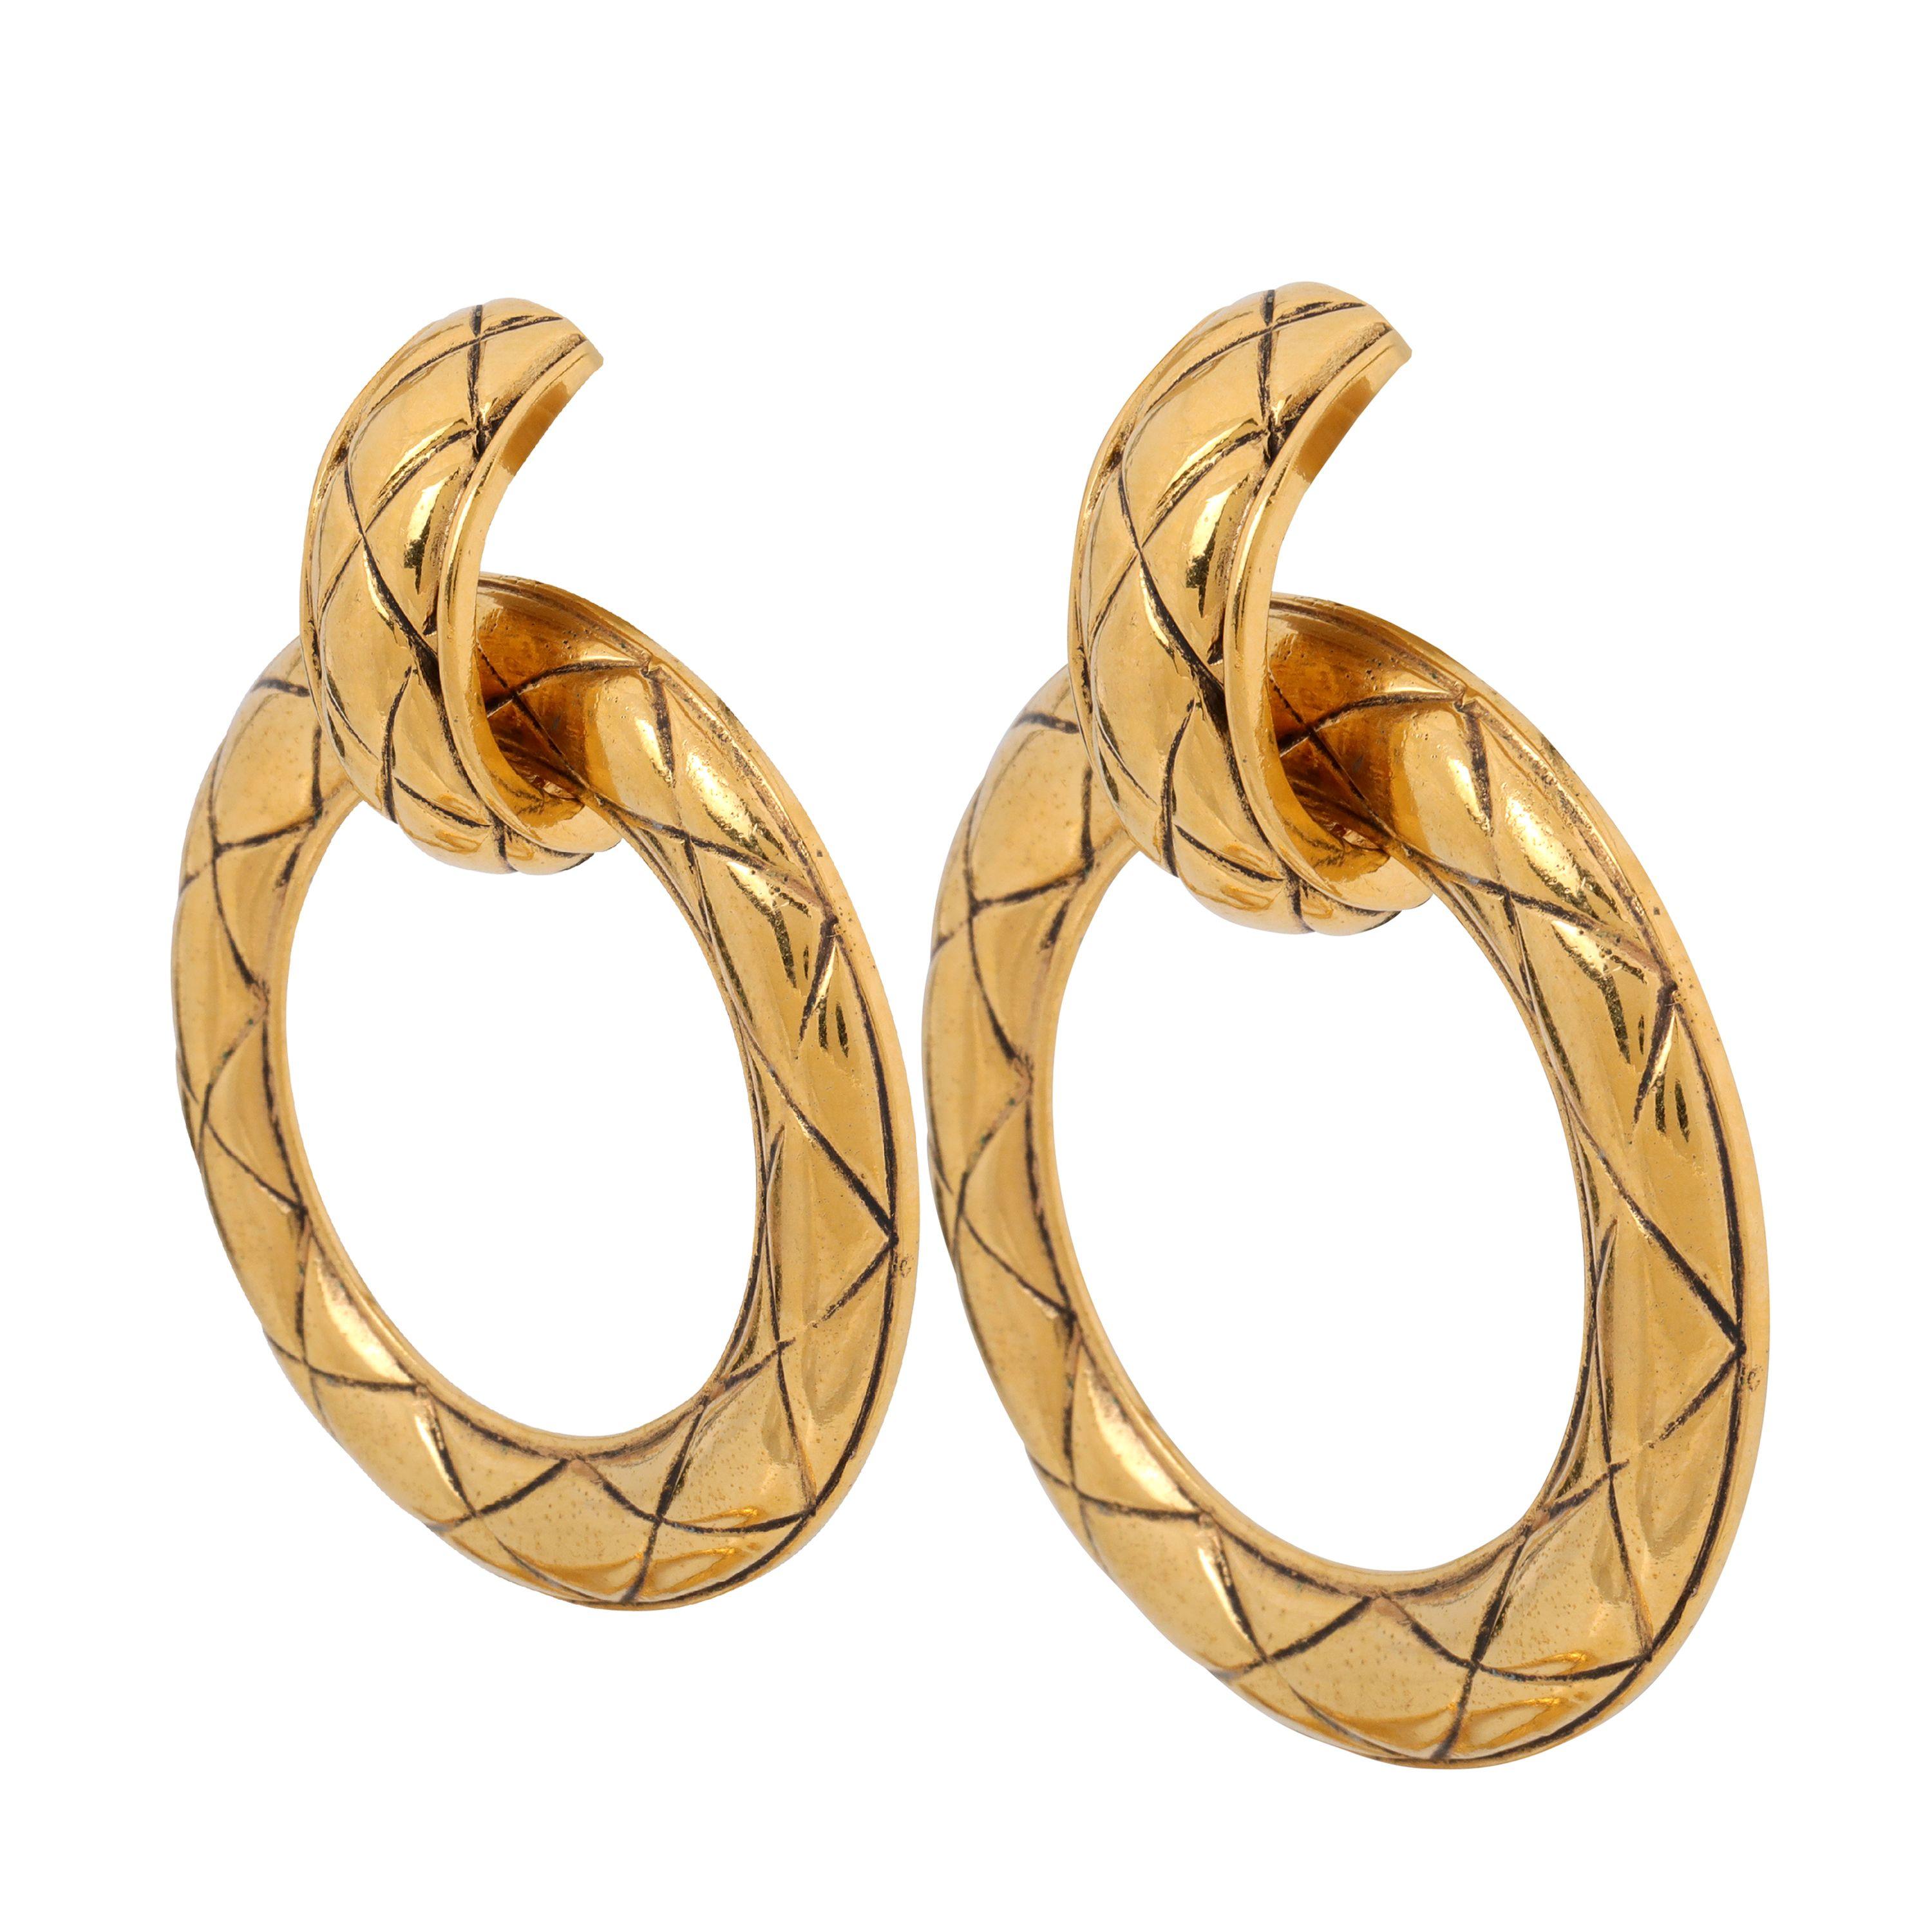 Diese authentischen Chanel Gold Quilted Hoop Clip On Earrings sind in ausgezeichnetem Vintage-Zustand aus den 1980er Jahren.  Die großen, nach vorne gerichteten Goldreifen sind mit der charakteristischen Chanel-Steppung versehen.  Clip-on-Stil. 